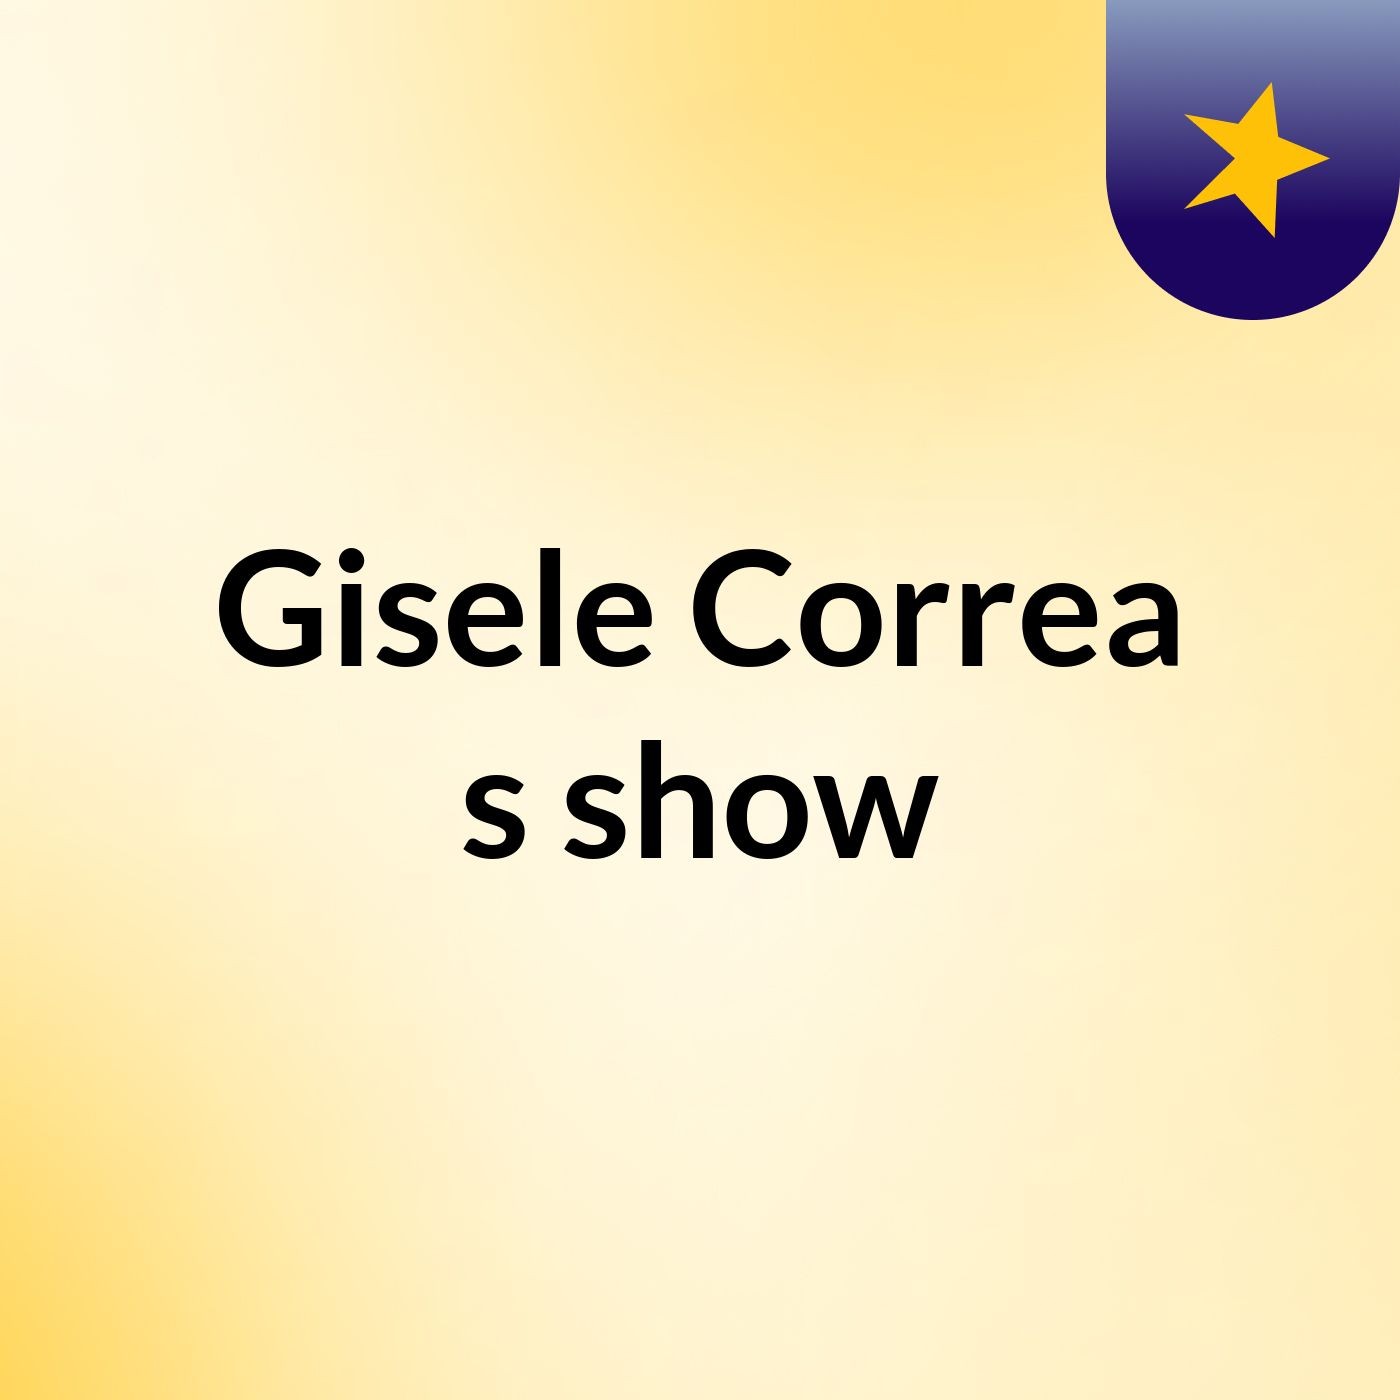 Gisele Correa's show